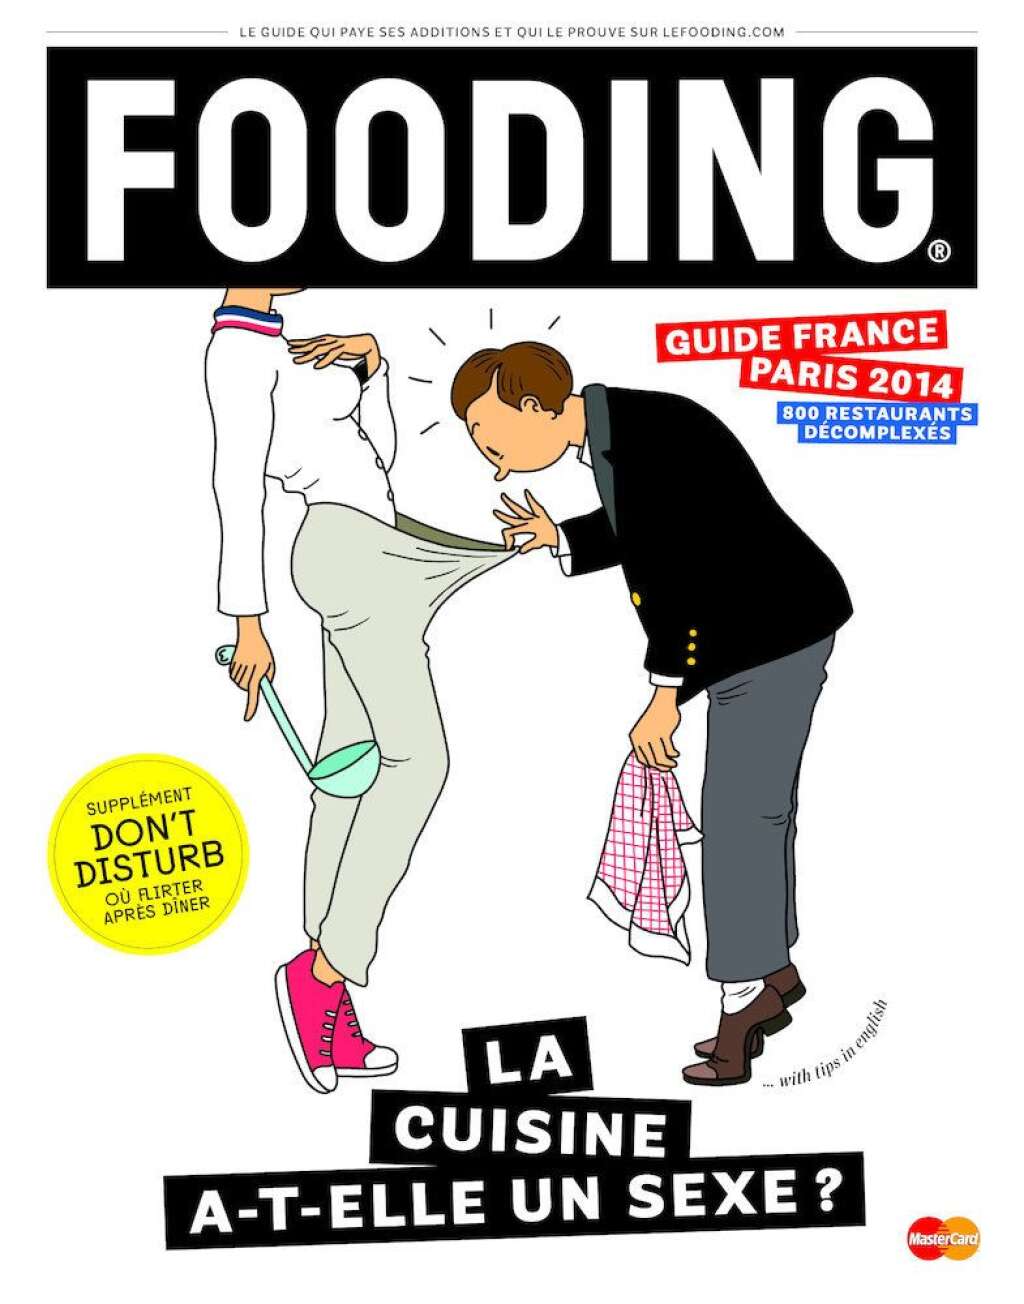 Le palmarès 2014 du Guide du Fooding - Rendez-vous page suivante!